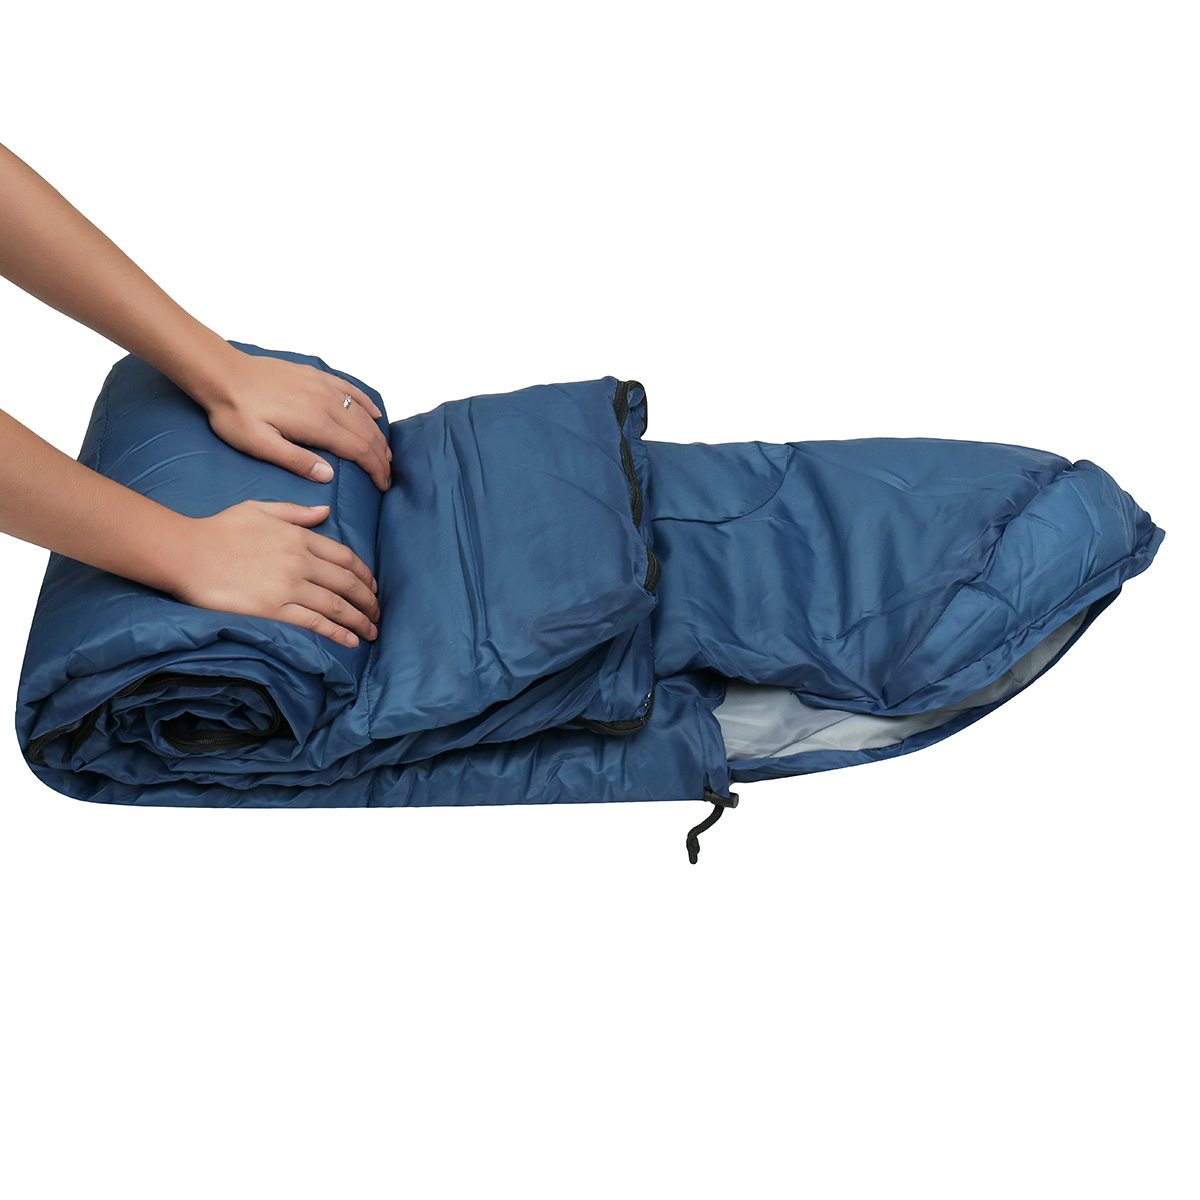 10x75CM-Waterproof-Camping-Envelope-Sleeping-Bag-Outdoor-Hiking-Backpacking-Sleeping-Bag-with-Compre-1647670-3